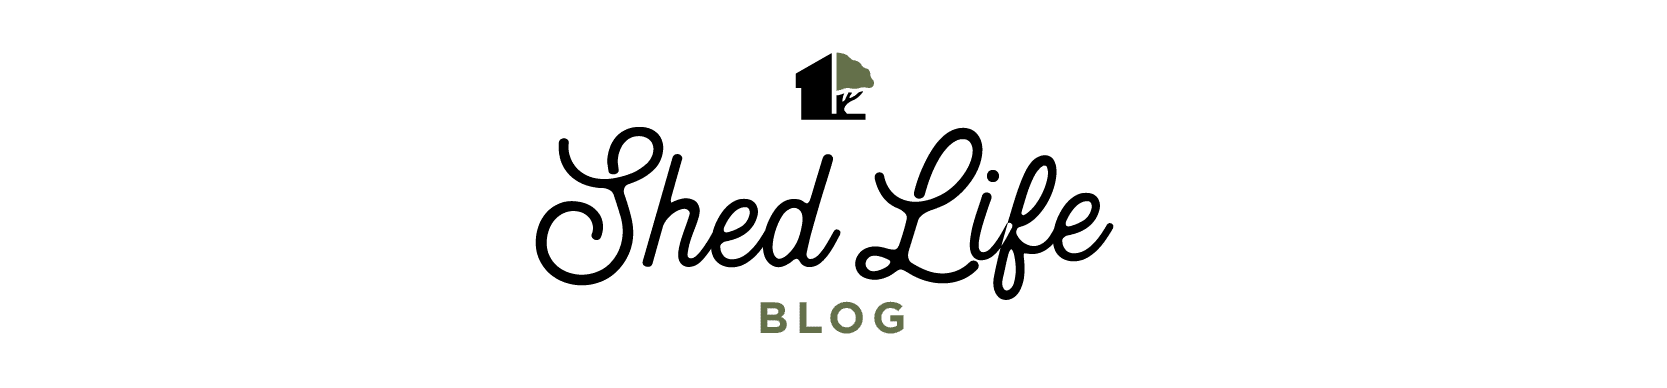 ShedLife Blog assets-07